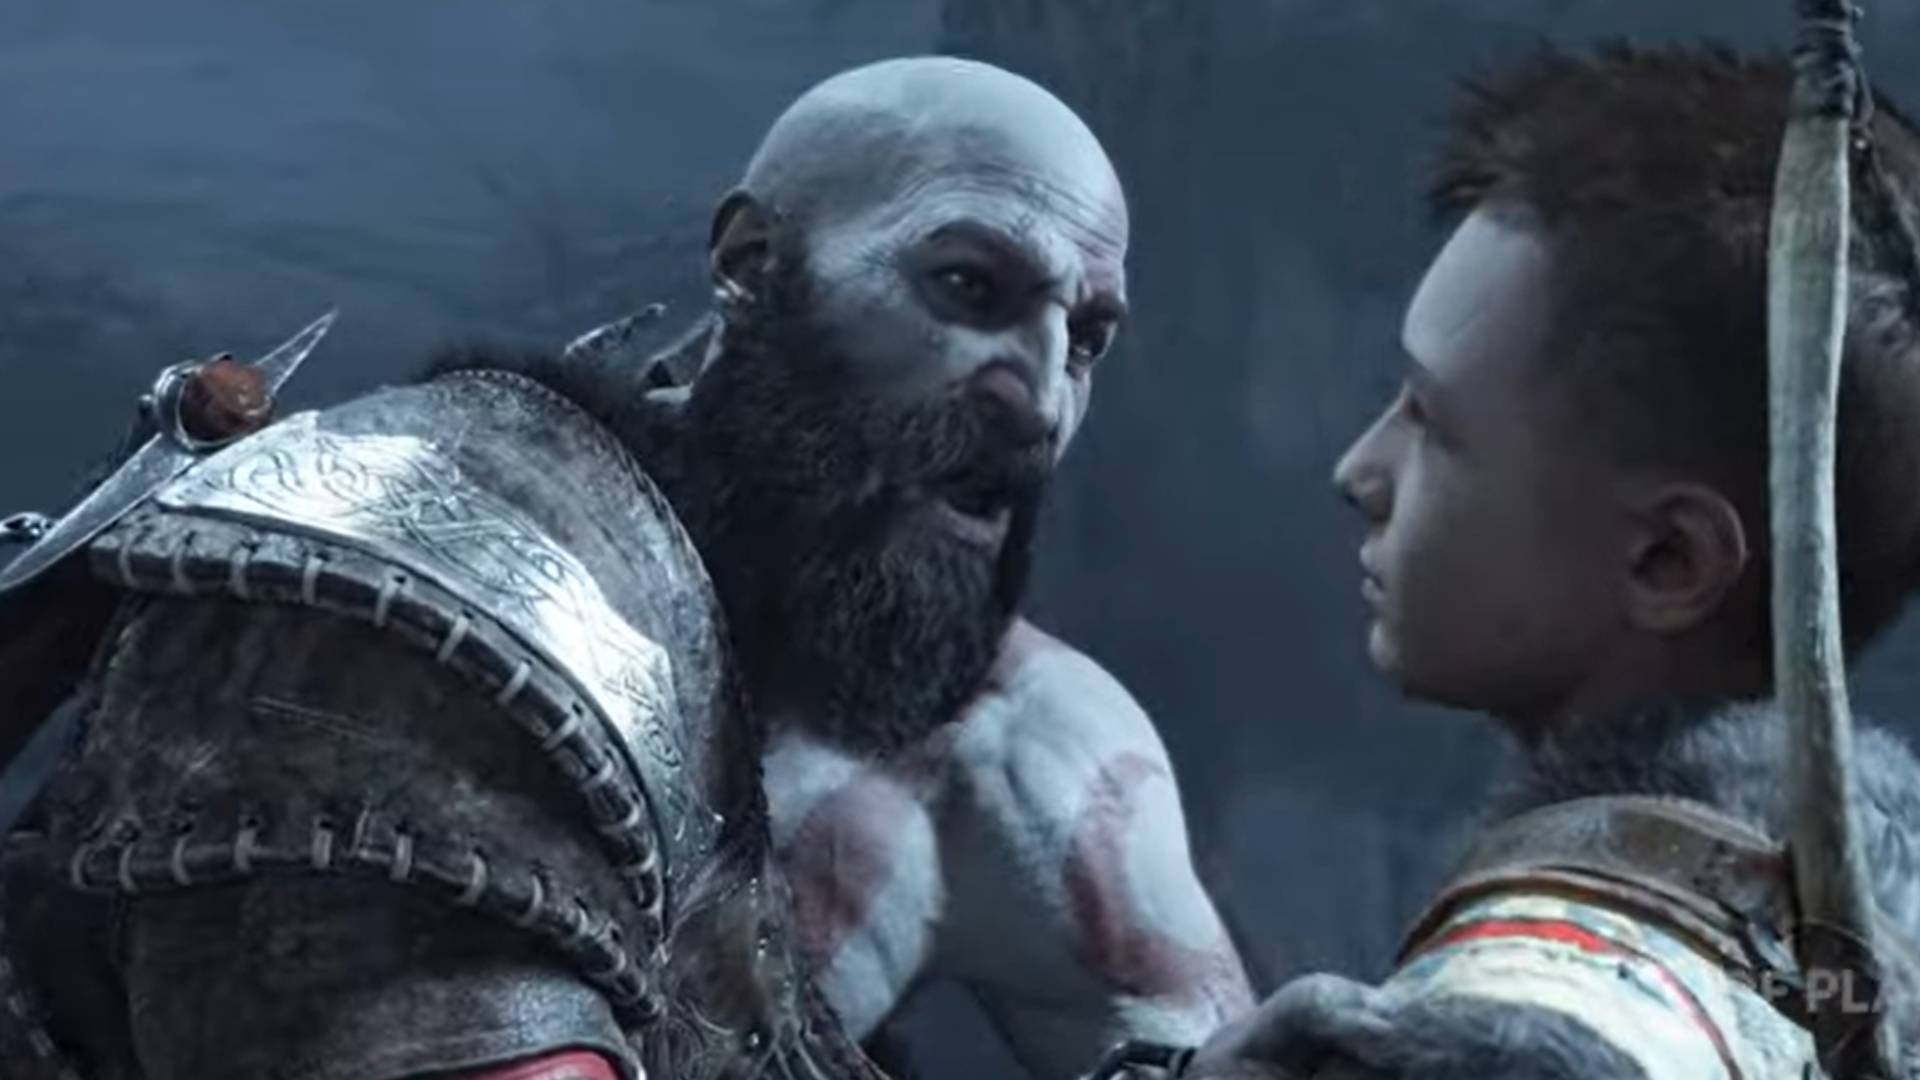 God of War Ragnarok ganha data de lançamento e novo trailer